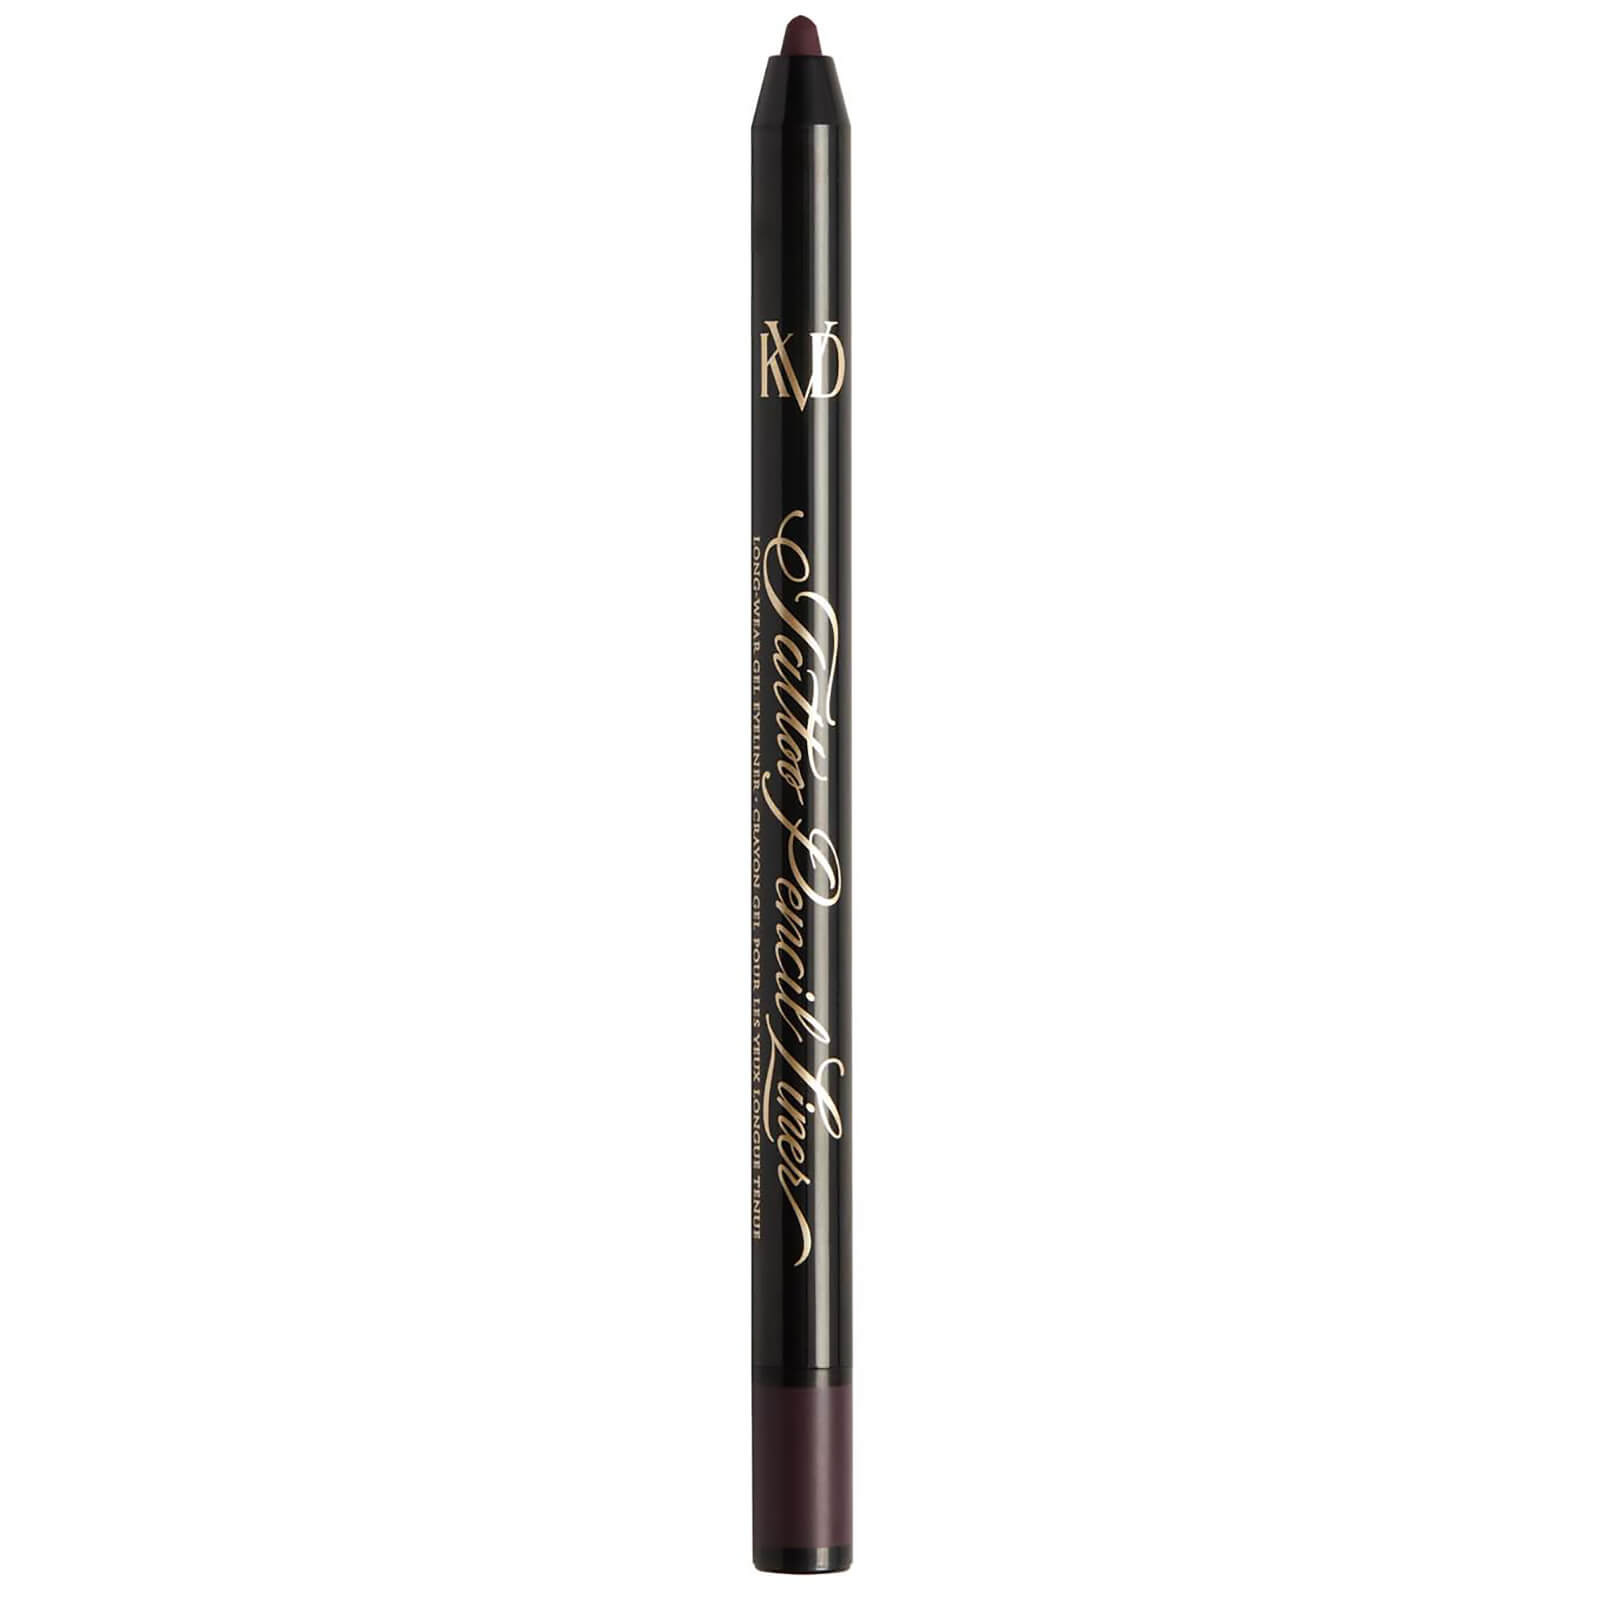 KVD Beauty Tattoo Pencil Liner Long-Wear Gel Eyeliner 0.5g (Various Shades) - Violet Hematite 70